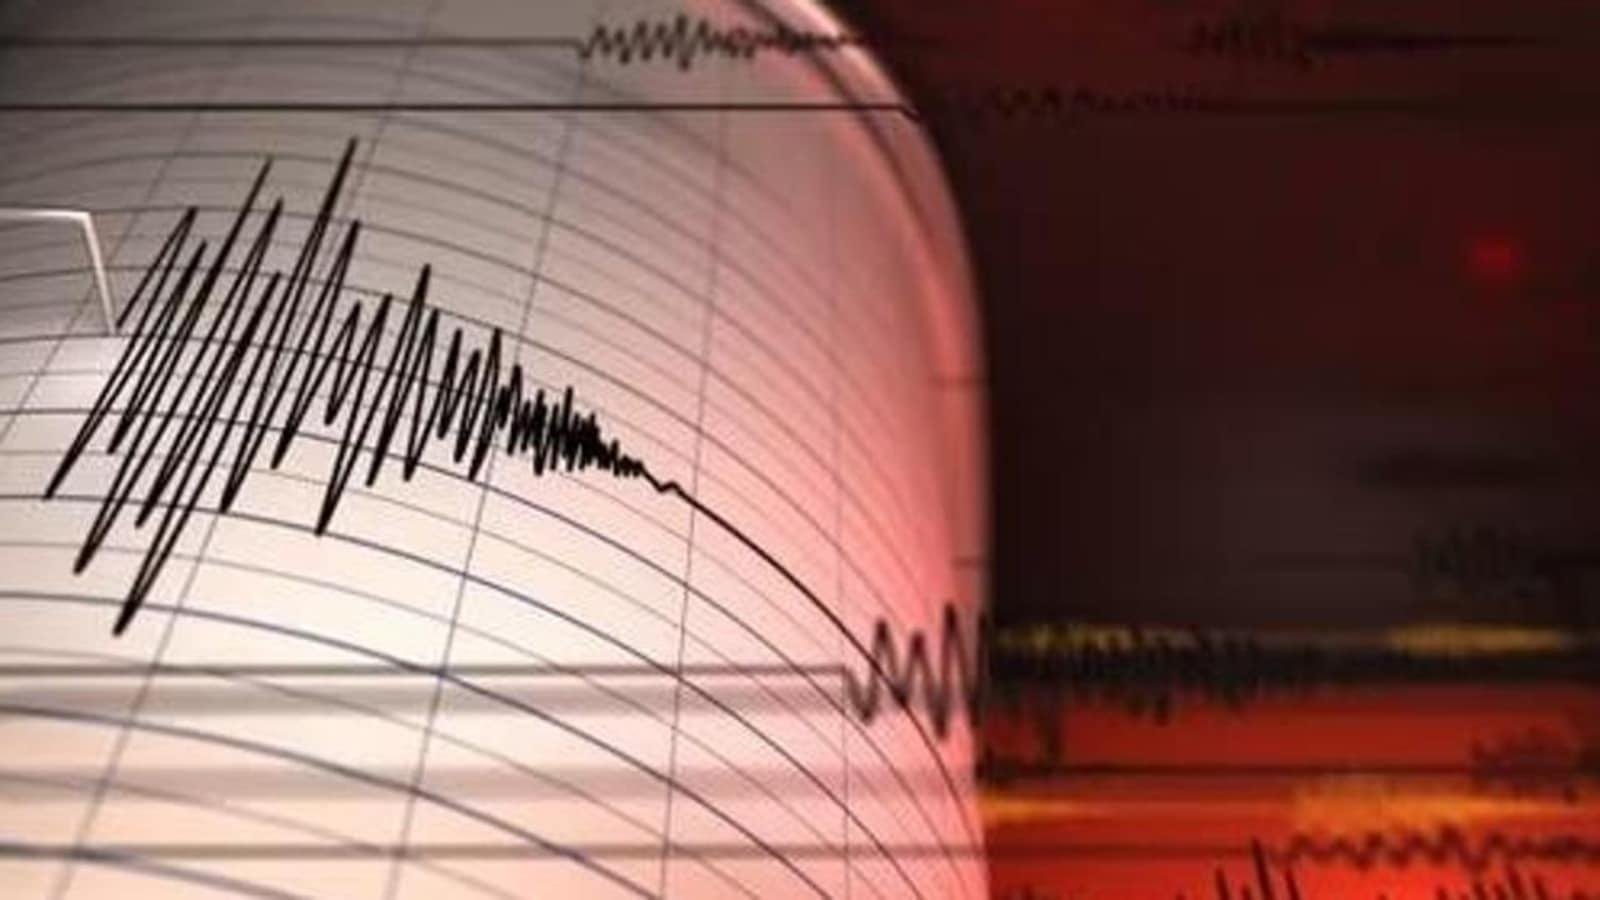 Terremoto de magnitud 7,3 sacude Chile, dice USGS |  Noticias del mundo